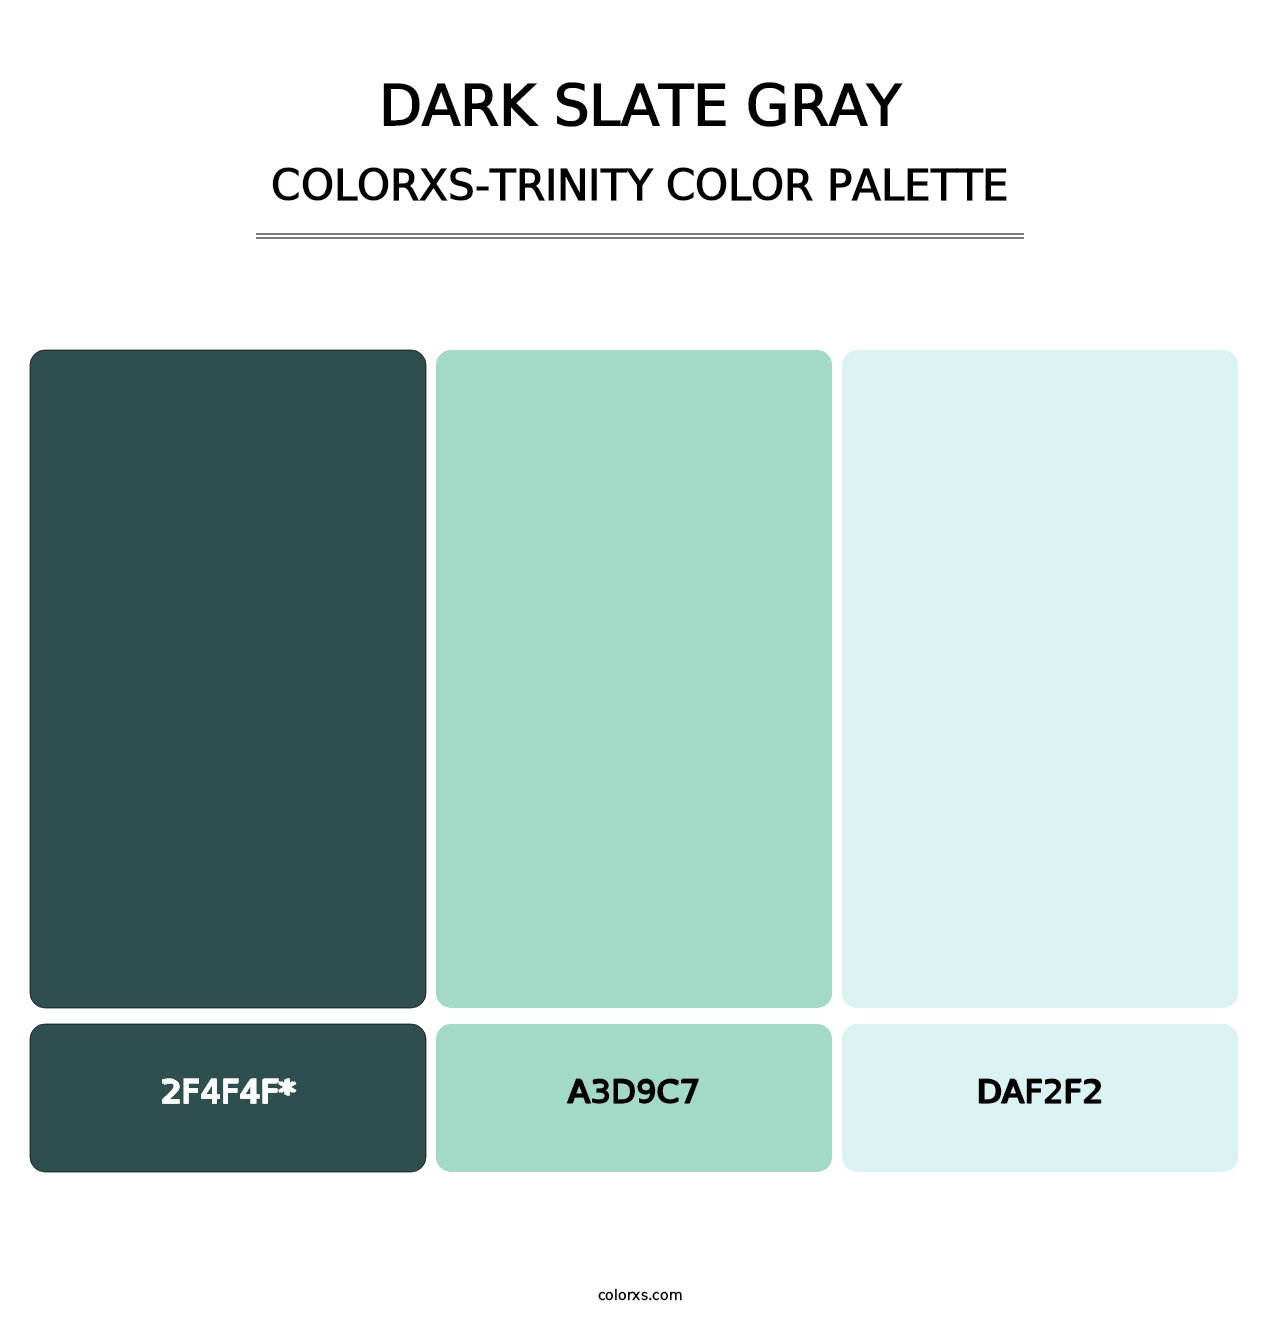 Dark Slate Gray - Colorxs Trinity Palette